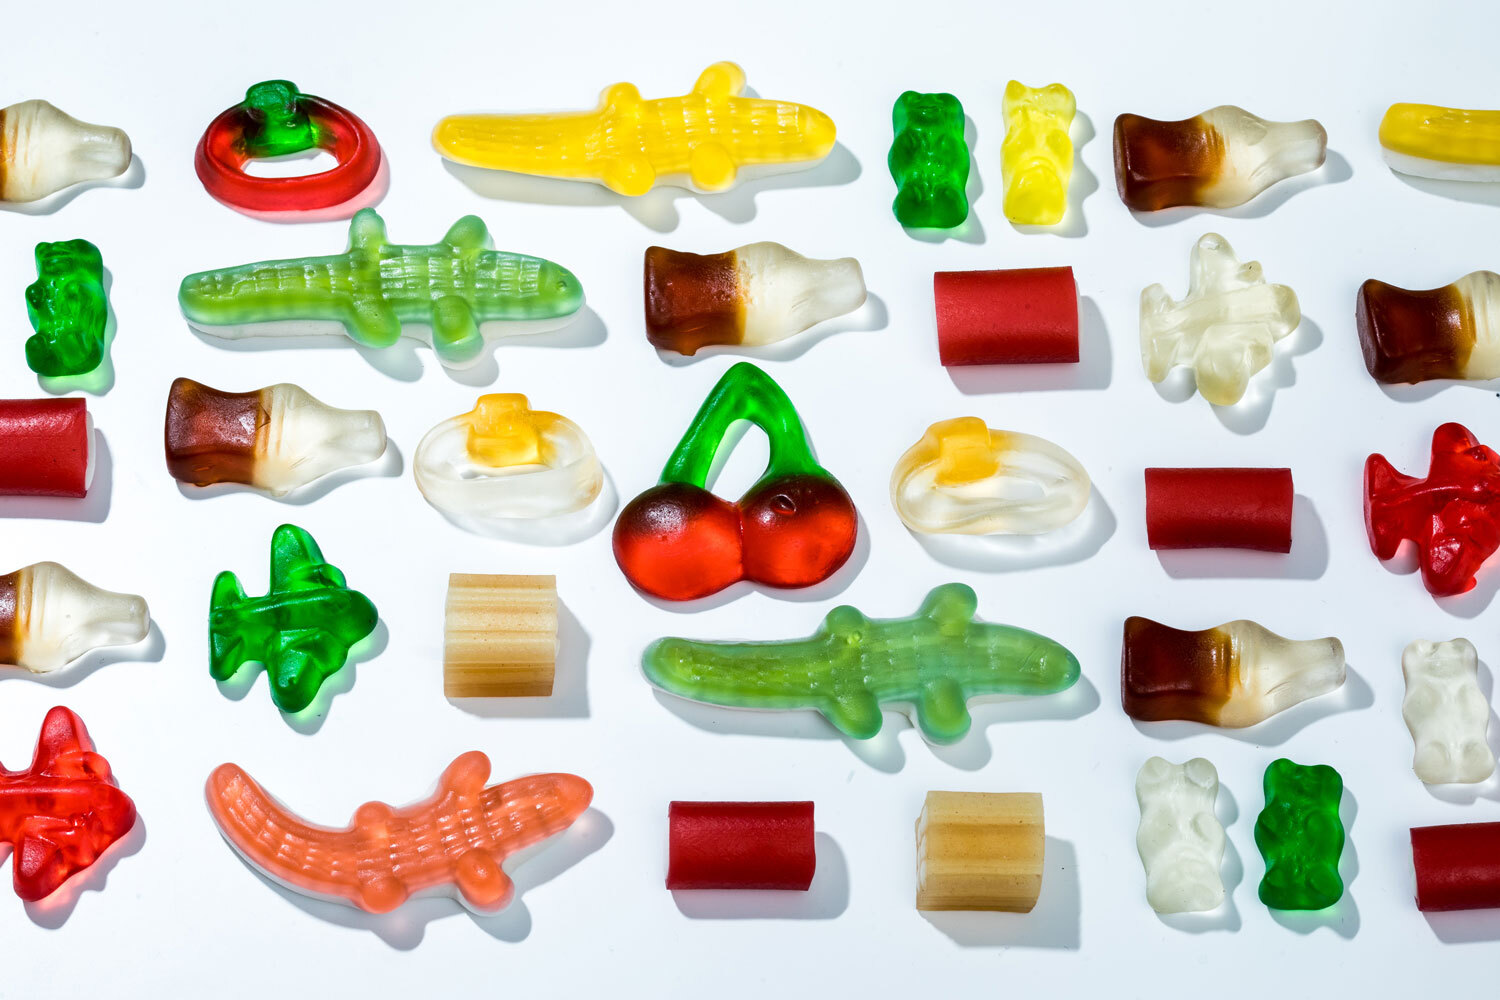 intense flavor science behind Haribo's gummies | Popular Science